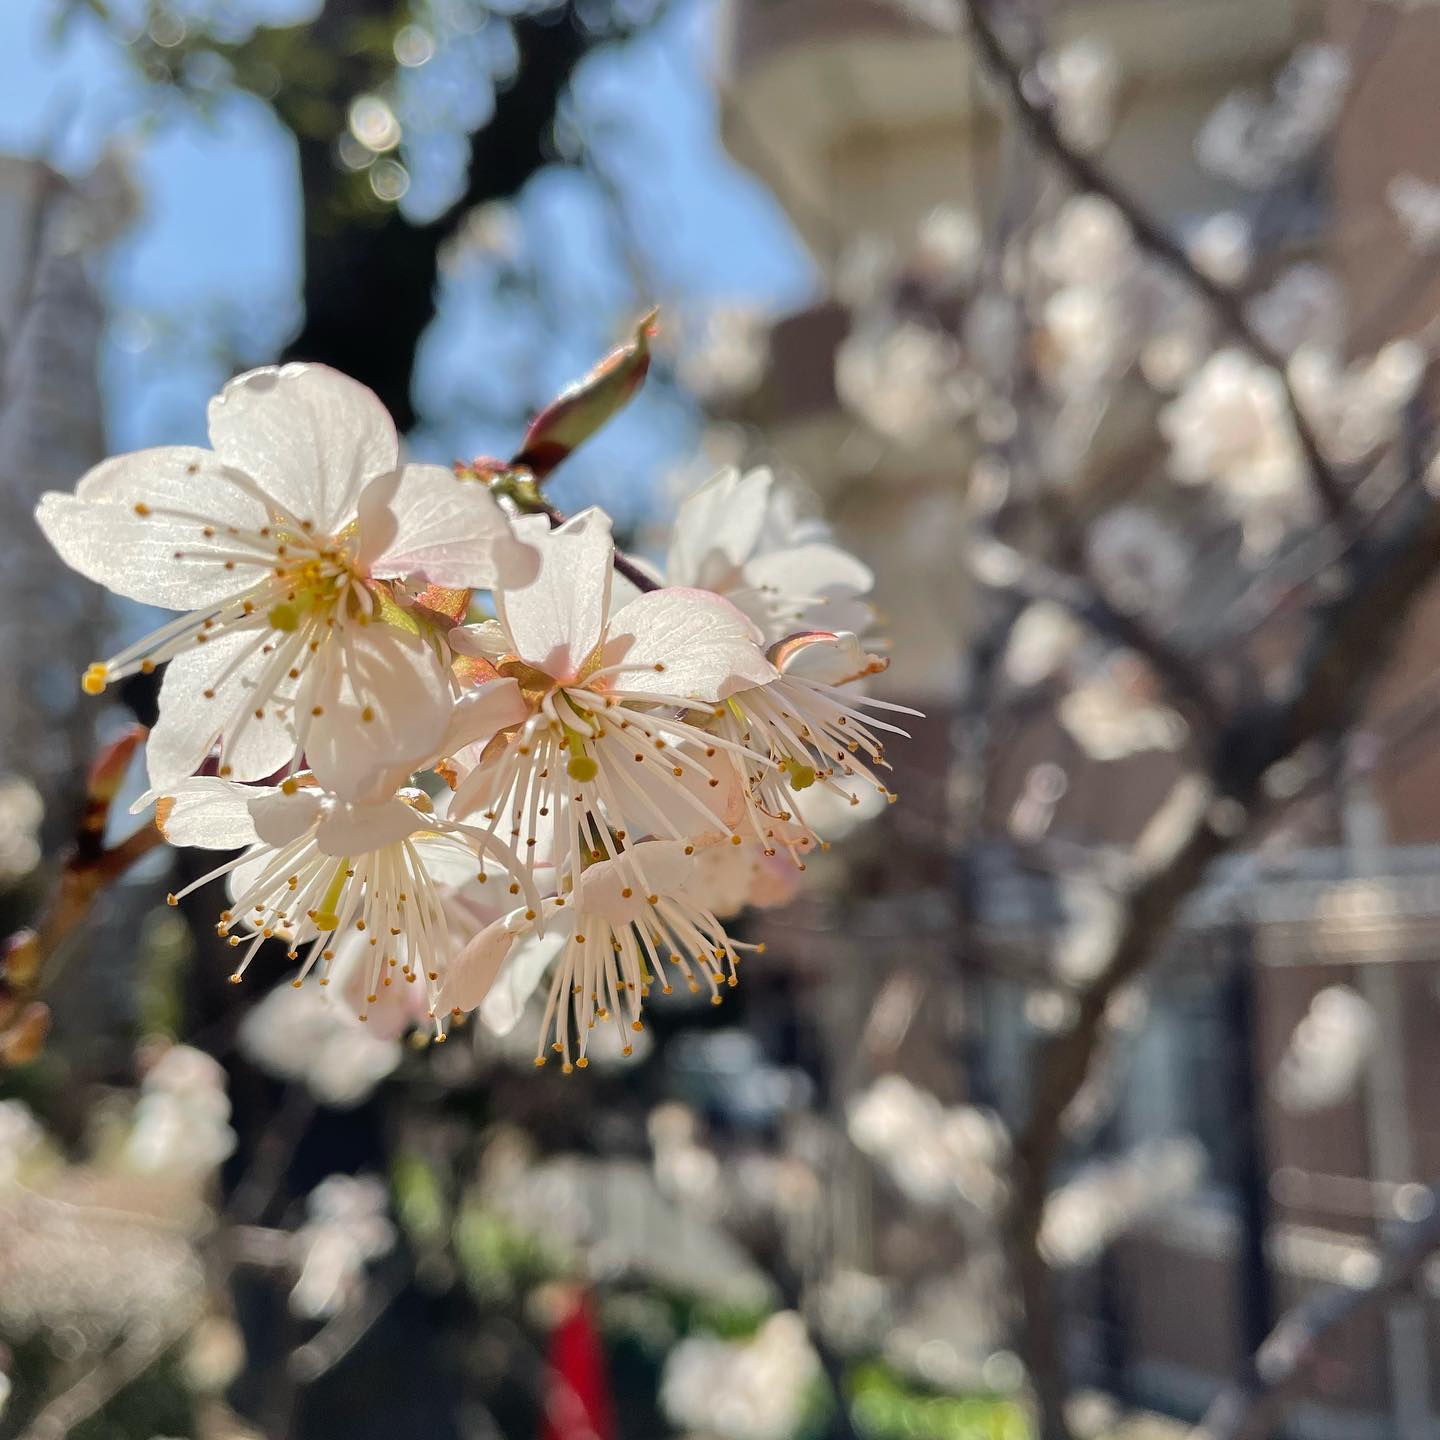 今年も近所のさくらんぼの花が咲いてます。ソメイヨシノよりも早い花見ですね今日3/4Open. 17:00Close. 23:00(OS. 22:00)明日3/5はお休みです。092-713-4550#イルフェソワフ #ワイン#日本酒 #薬院#警固#焼き鳥#ナチュラルワイン#ヴァンナチュール#自然派ワイン#さくらんぼの花